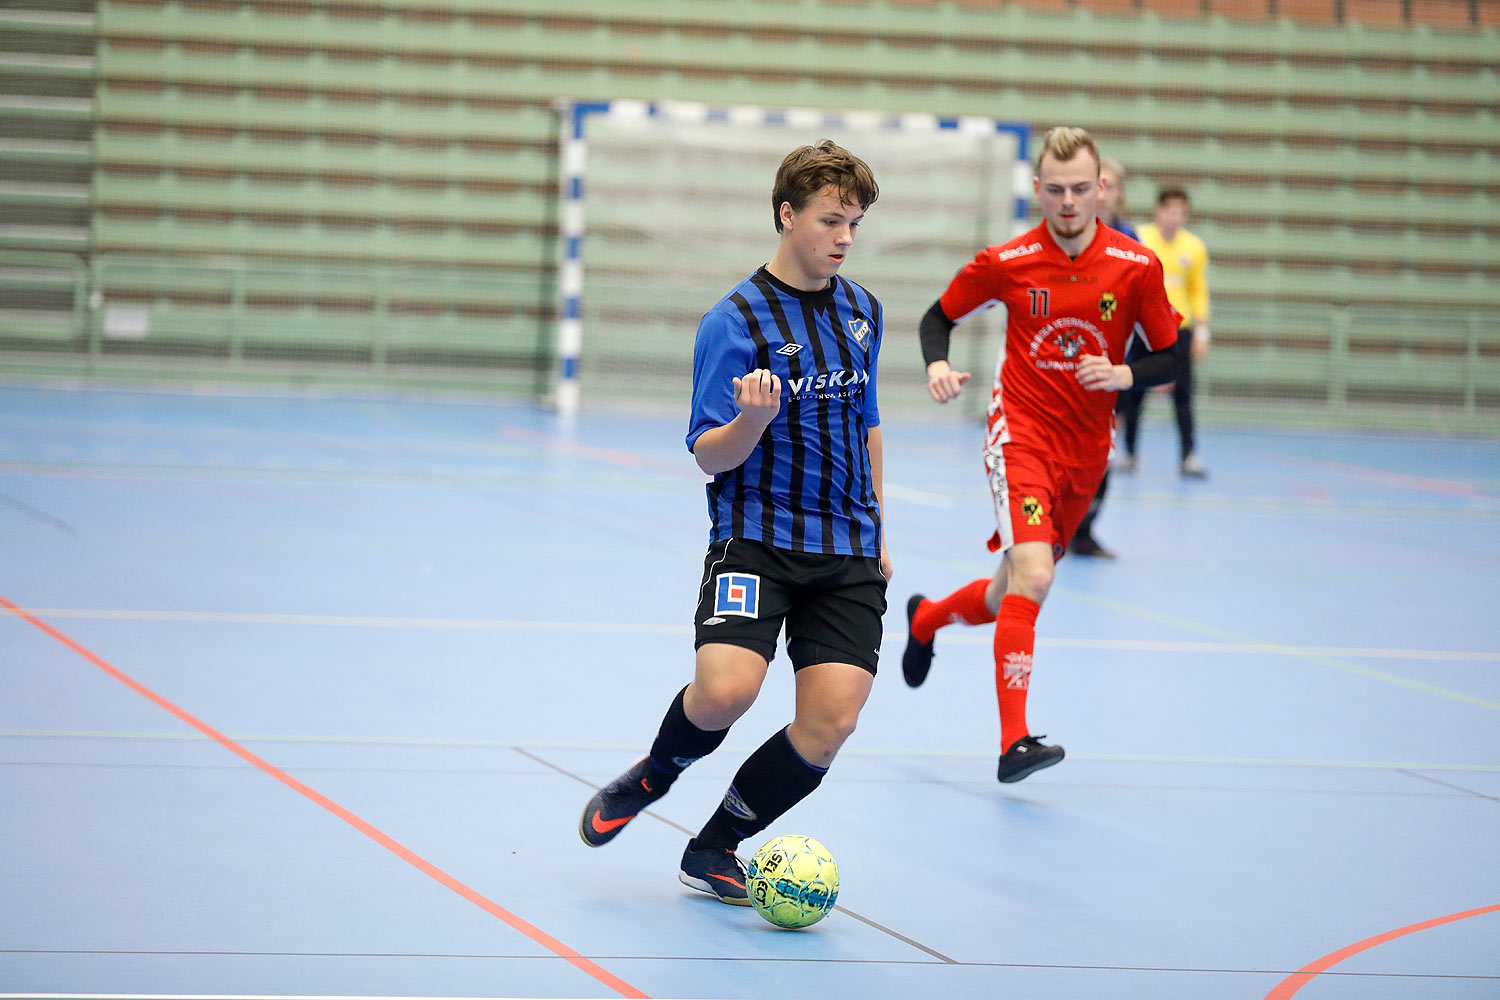 Skövde Futsalcup Herrjuniorer Ulricehamns IFK-Töreboda IK,herr,Arena Skövde,Skövde,Sverige,Skövde Futsalcup 2016,Futsal,2016,142007